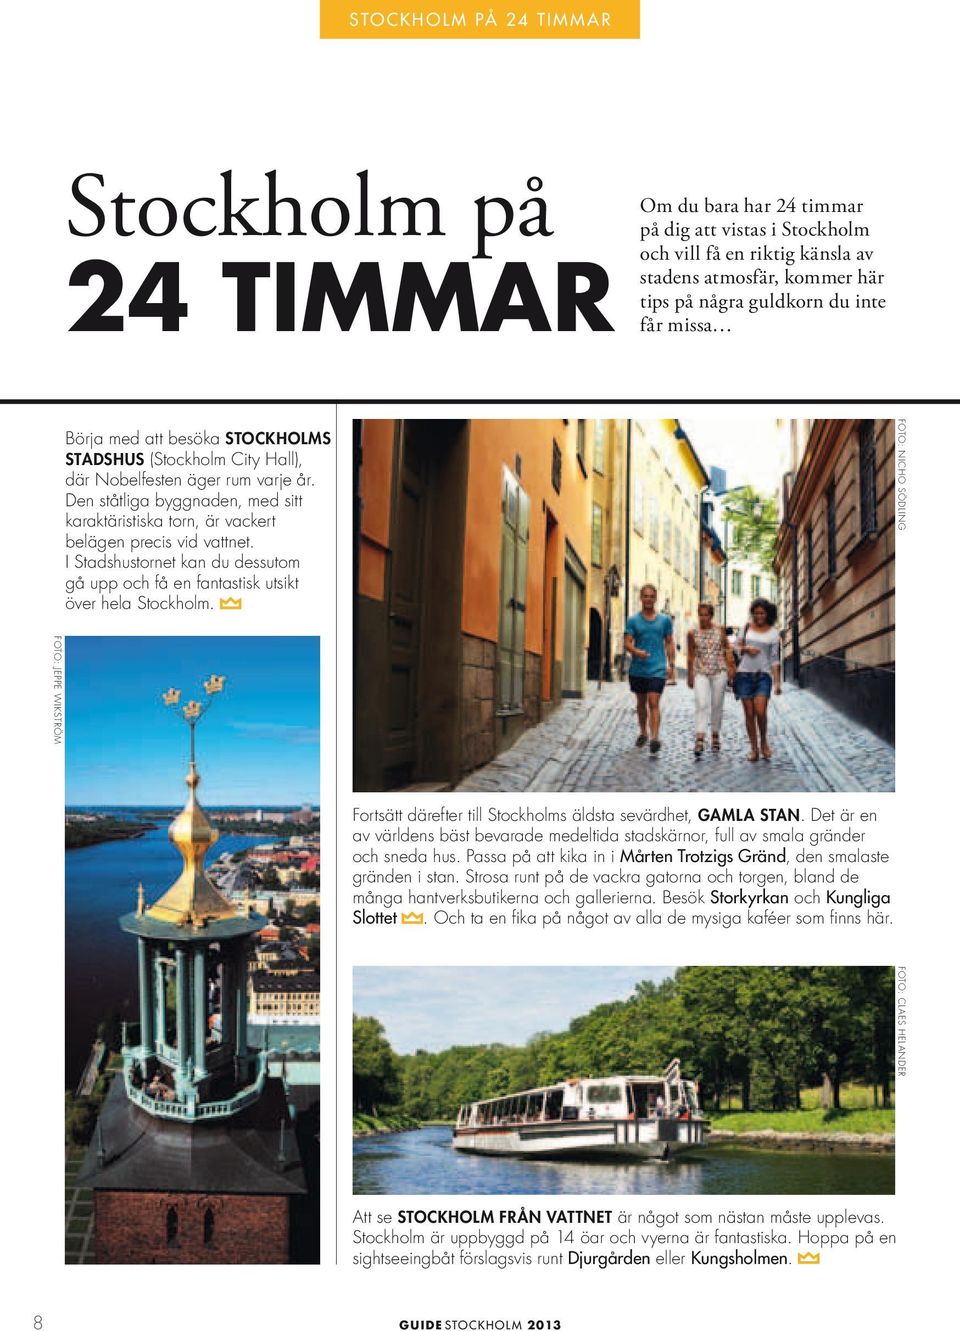 Den ståtliga byggnaden, med sitt karaktäristiska torn, är vackert belägen precis vid vattnet. I Stadshustornet kan du dessutom gå upp och få en fantastisk utsikt över hela Stockholm.